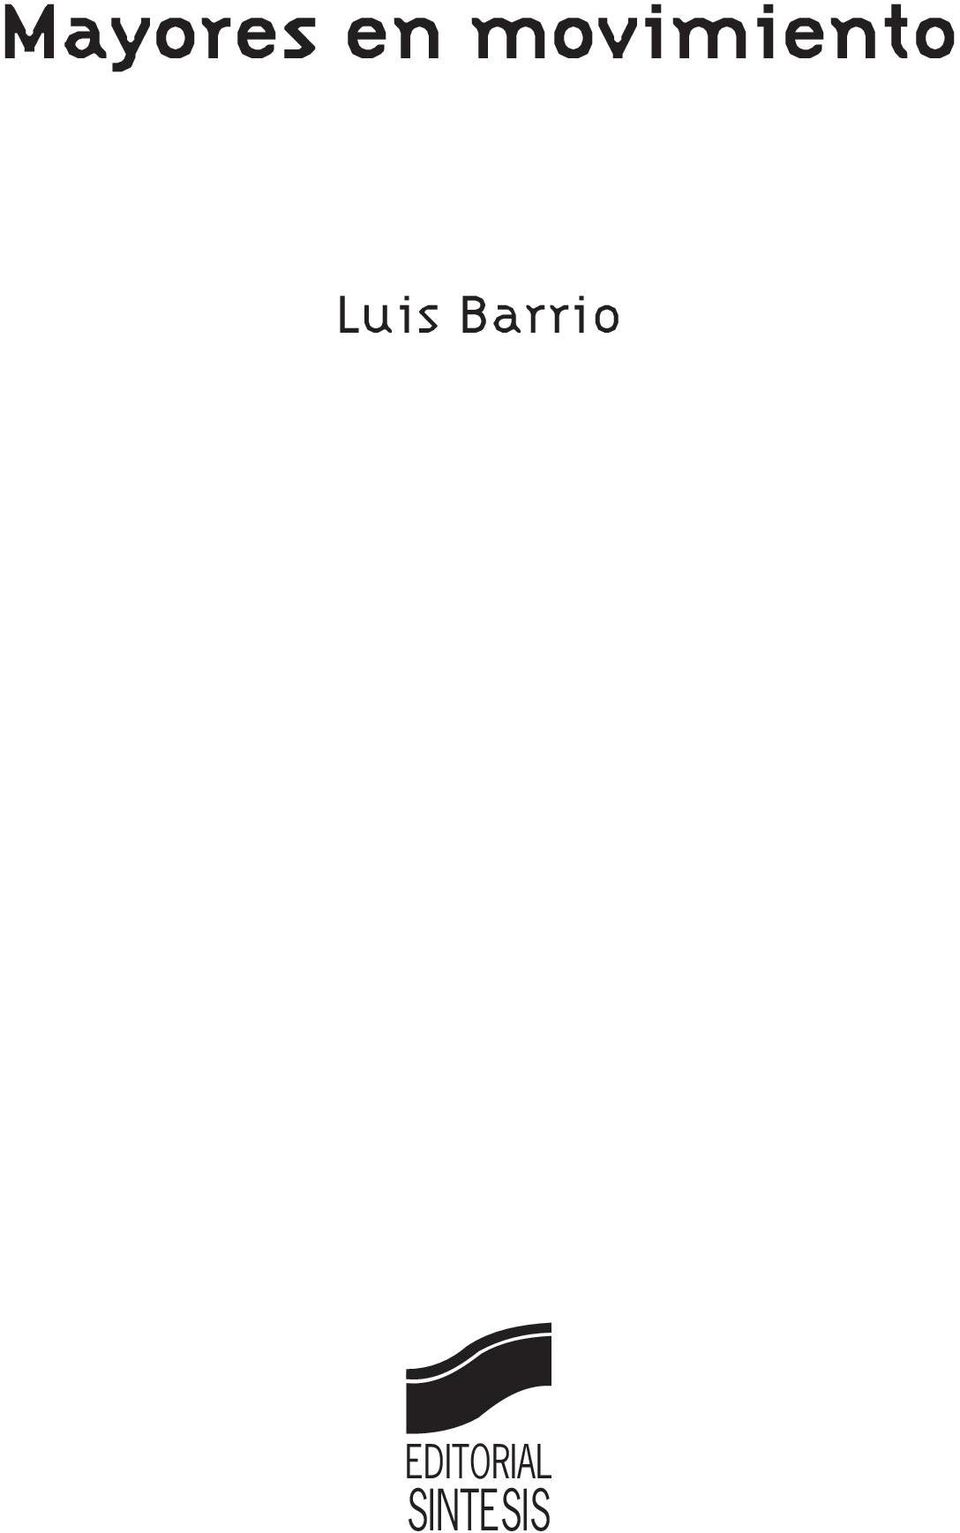 Luis Barrio